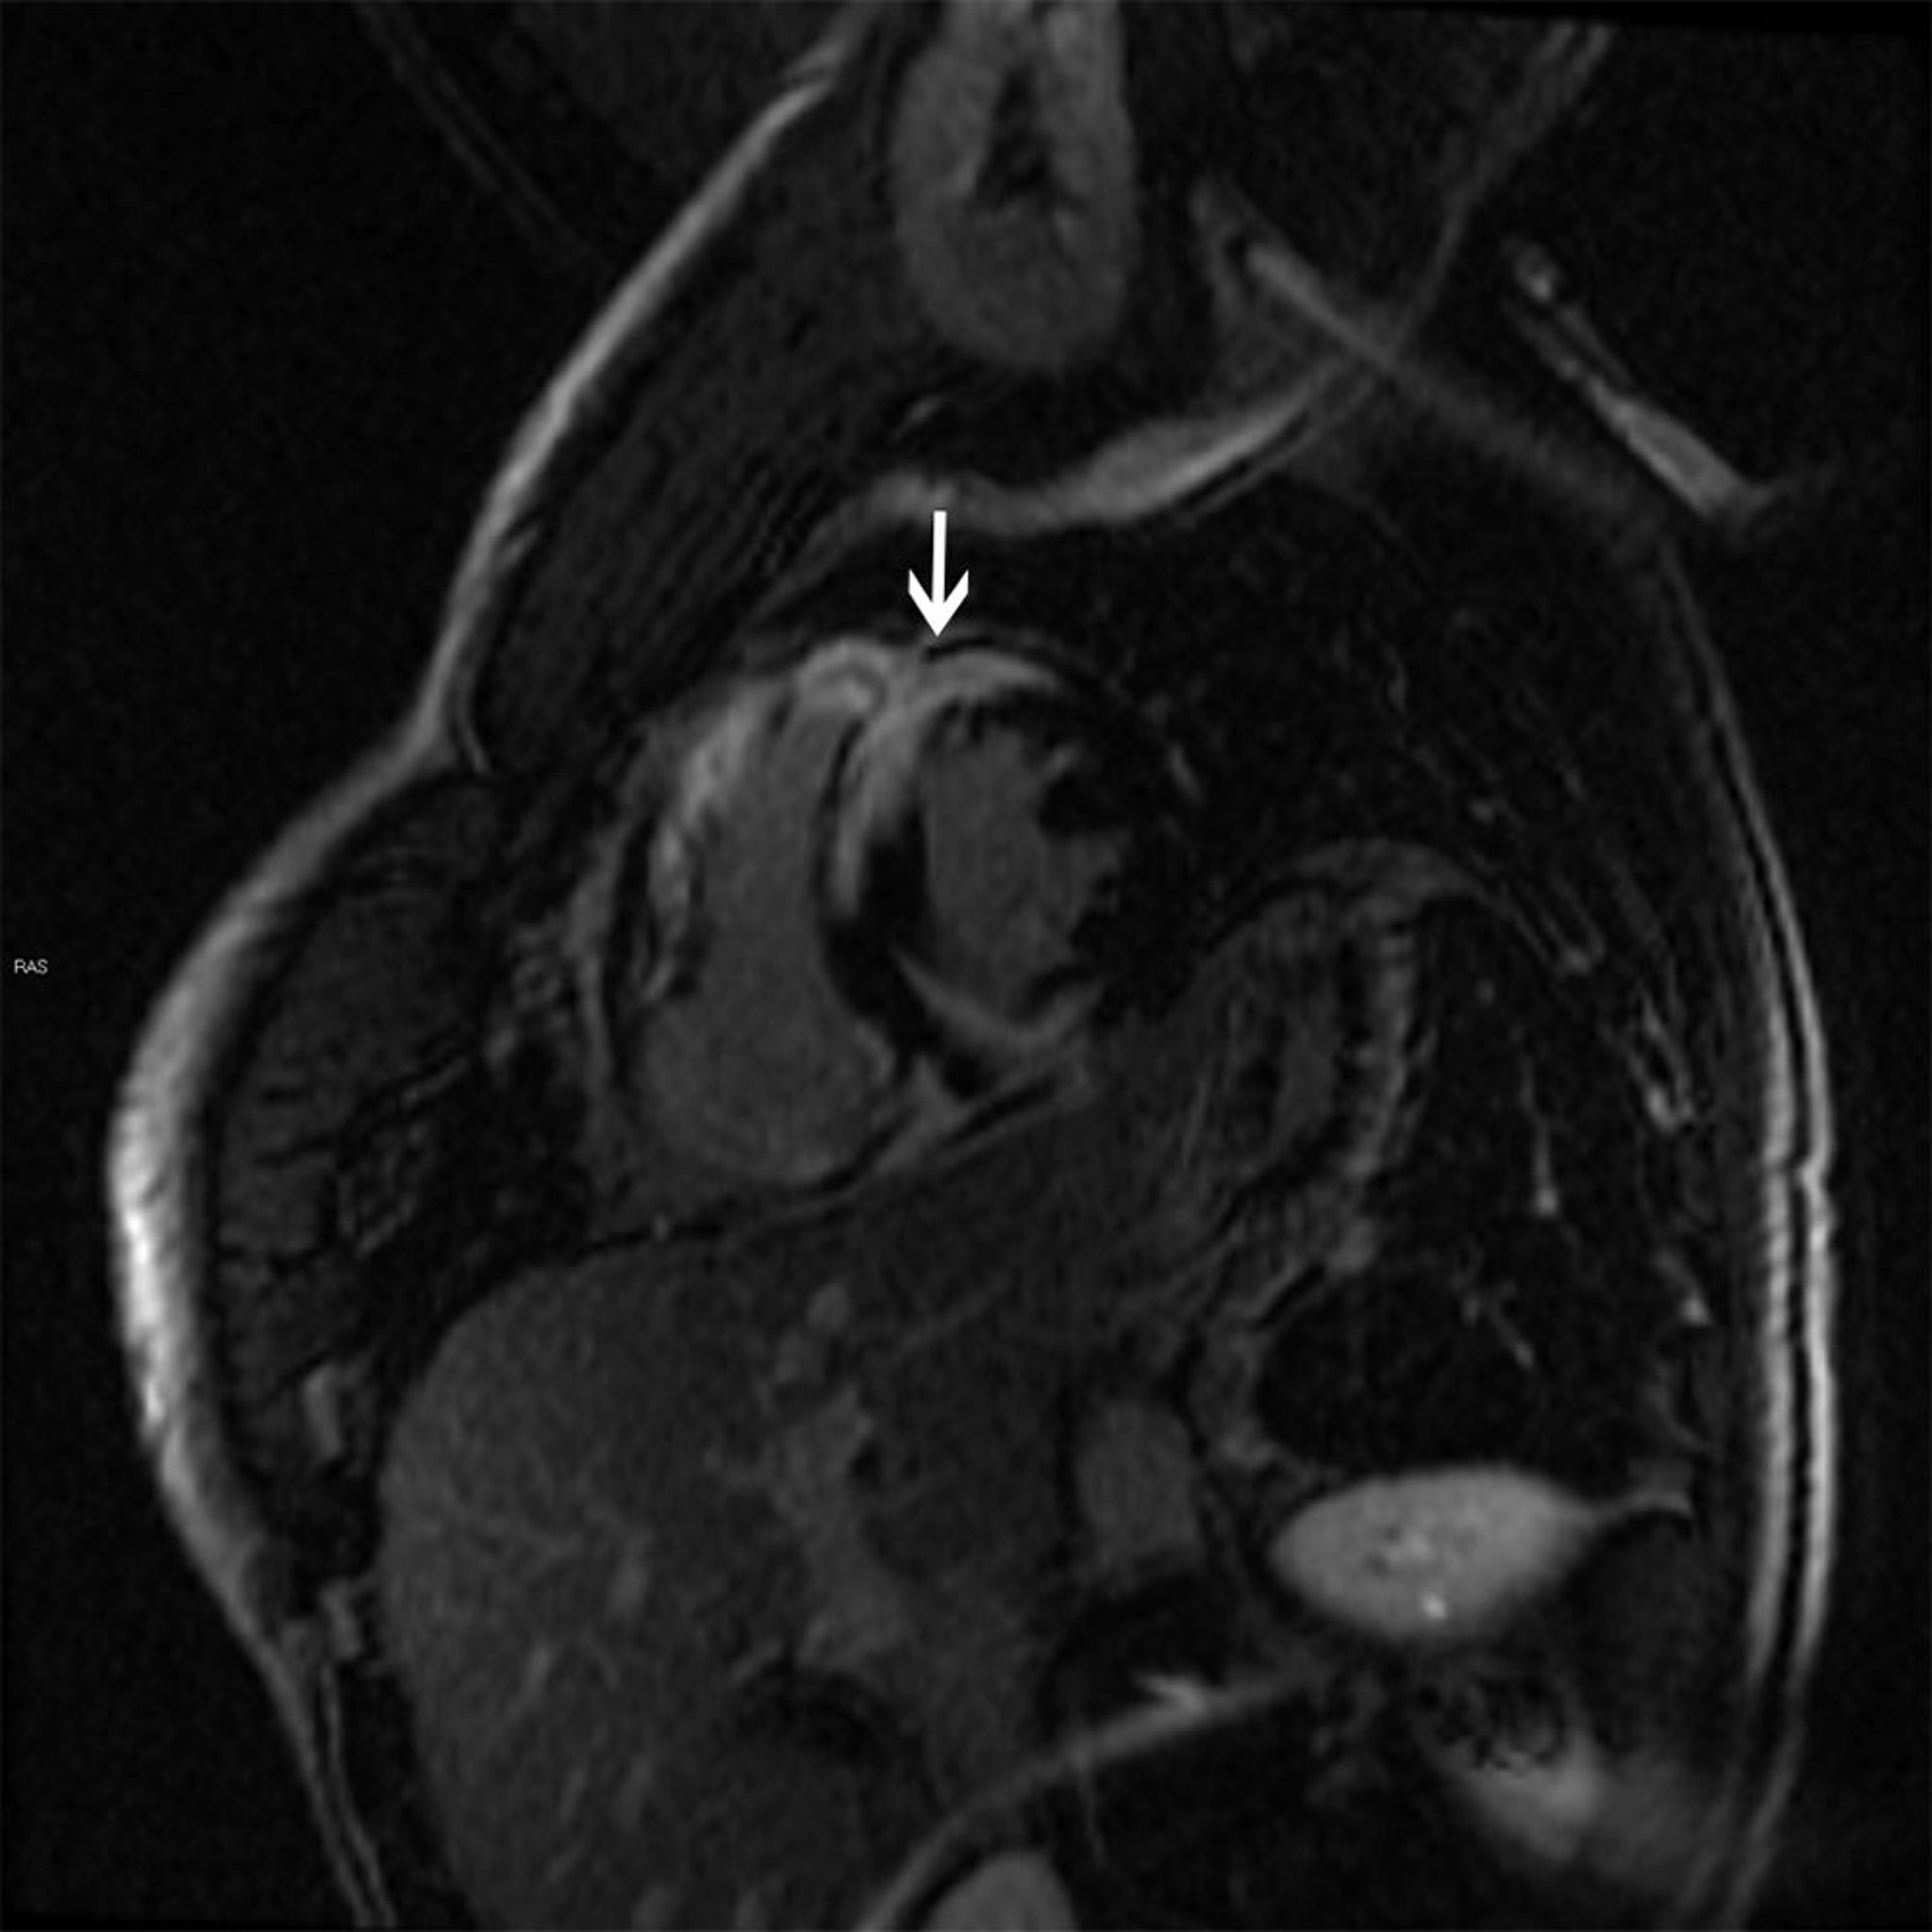 Hallazgos en la resonancia magnética de la sarcoidosis cardíaca